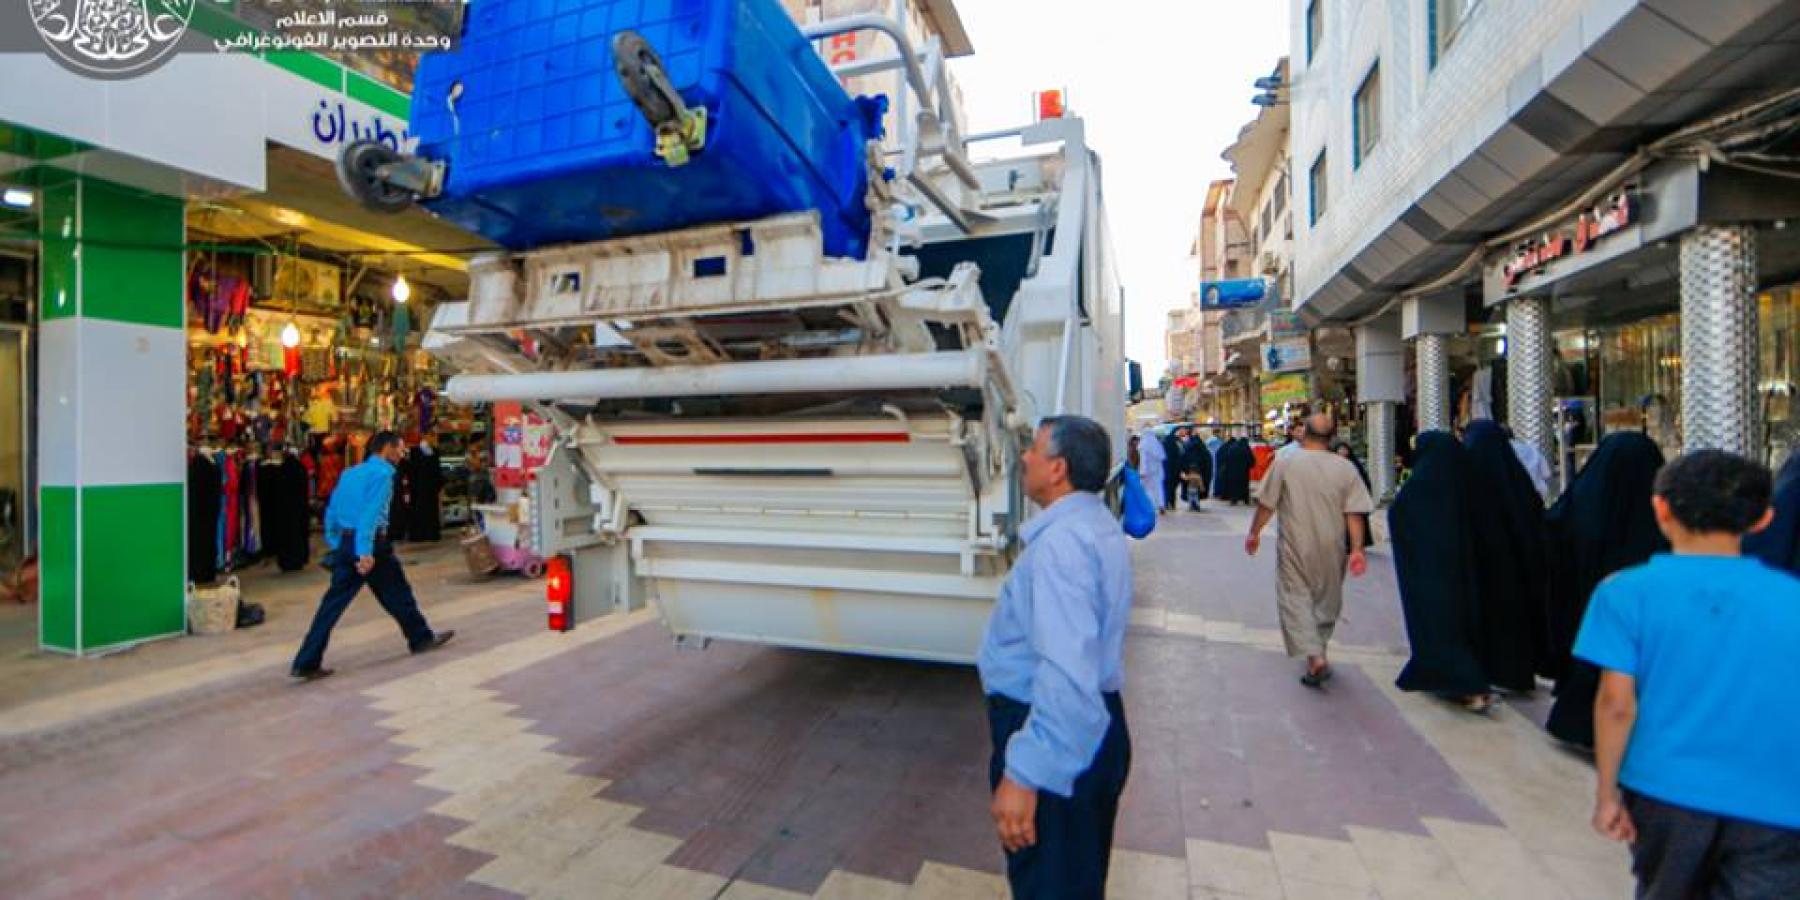  الامانة العامة للعتبة العلوية المقدسة تبدأ بتنفيذ مشروع التنظيف الدائم للشوارع المحيطة بالصحن الحيدري الشريف